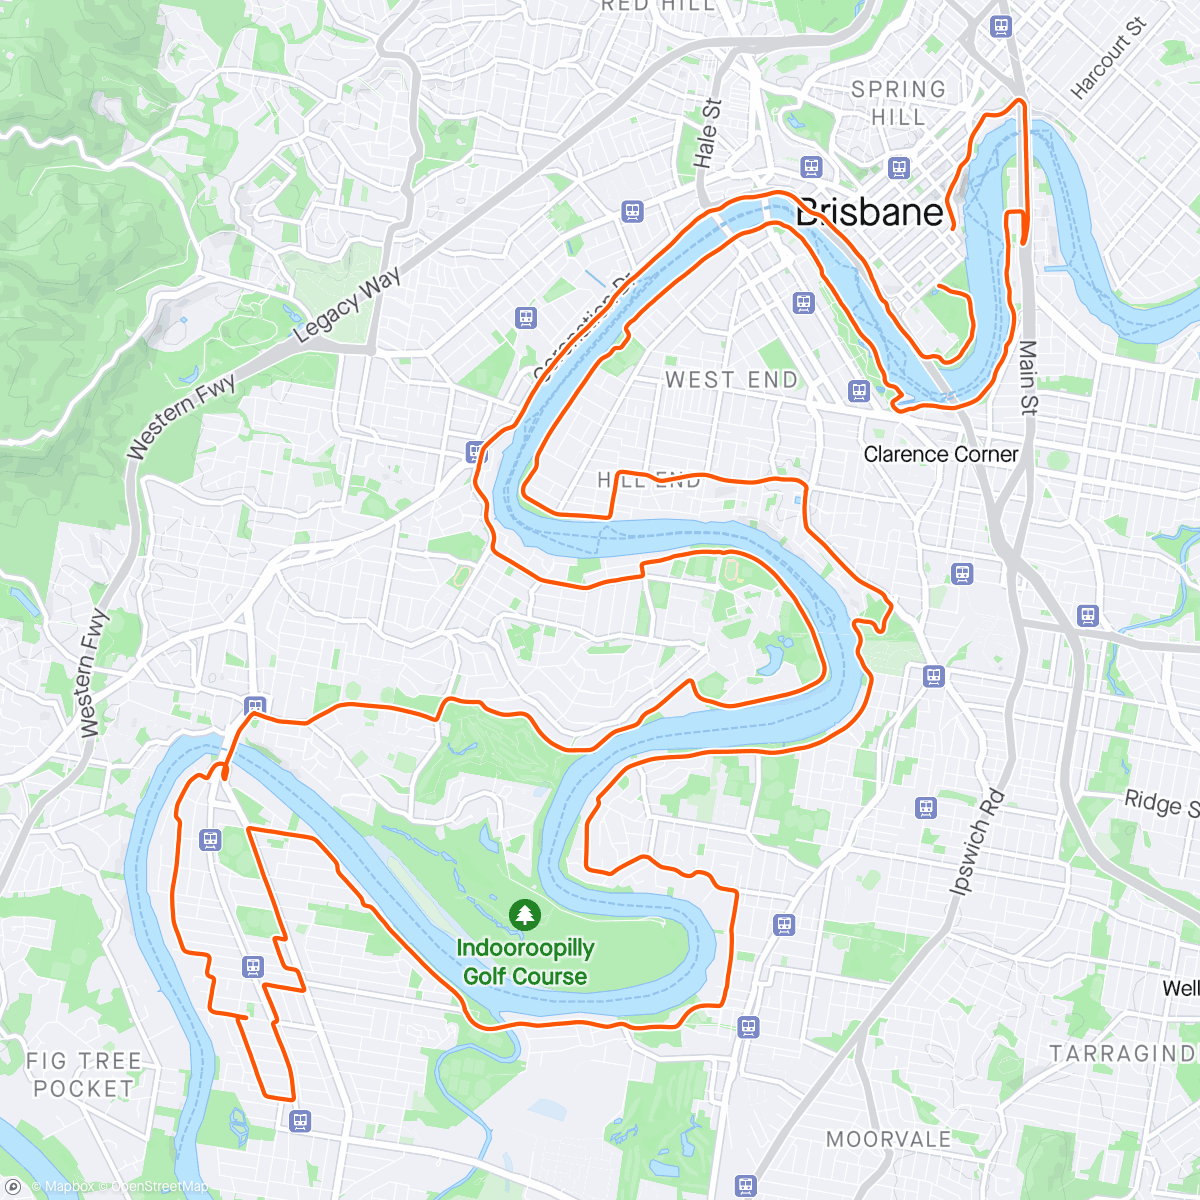 「Brisbane River Loop」活動的地圖